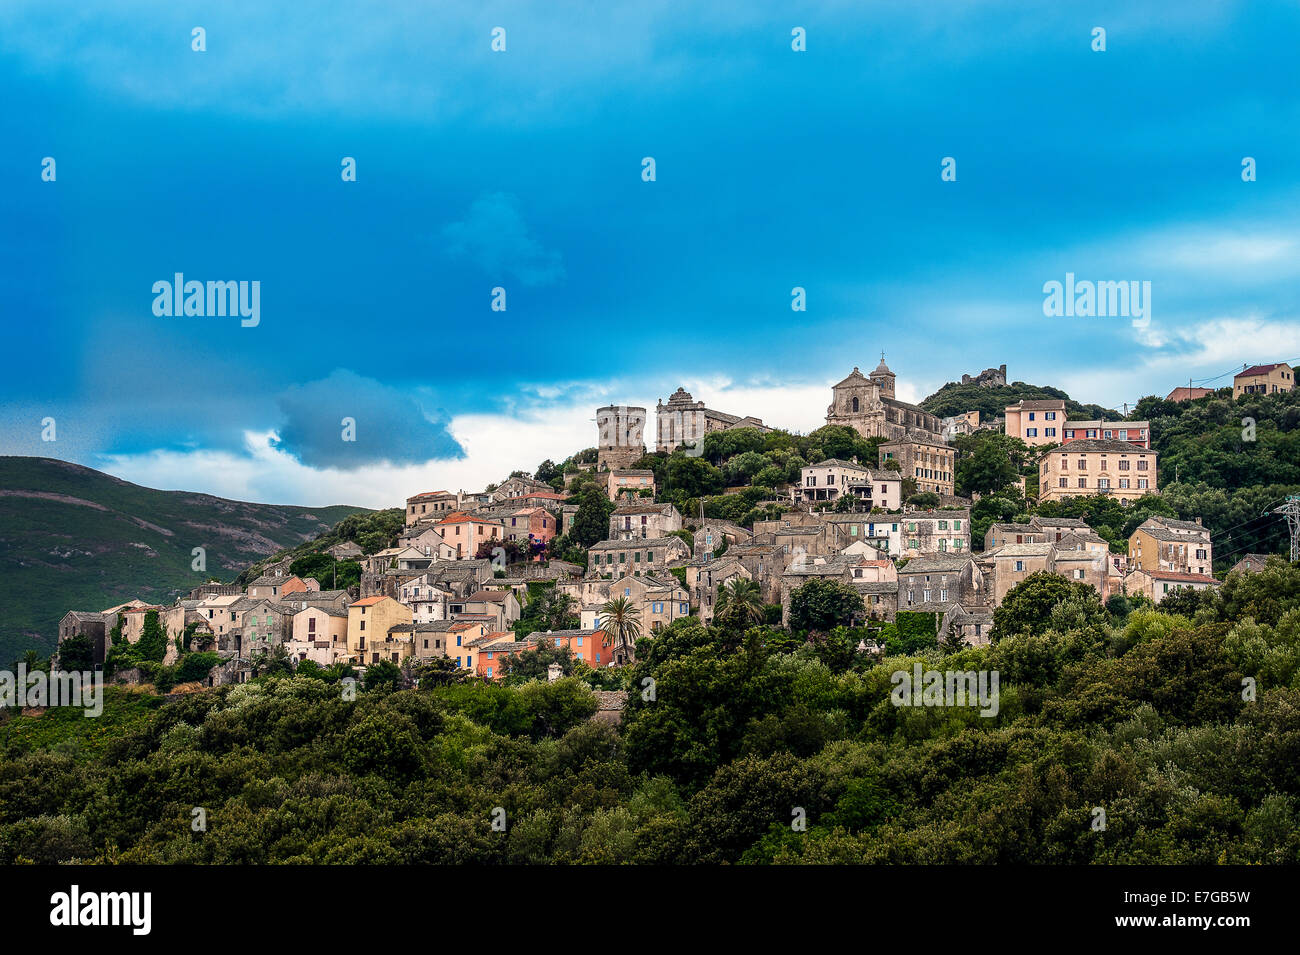 Europe, France, Corsica, Haute Corse, Cap Corse. The perched village of Rogliano. Stock Photo